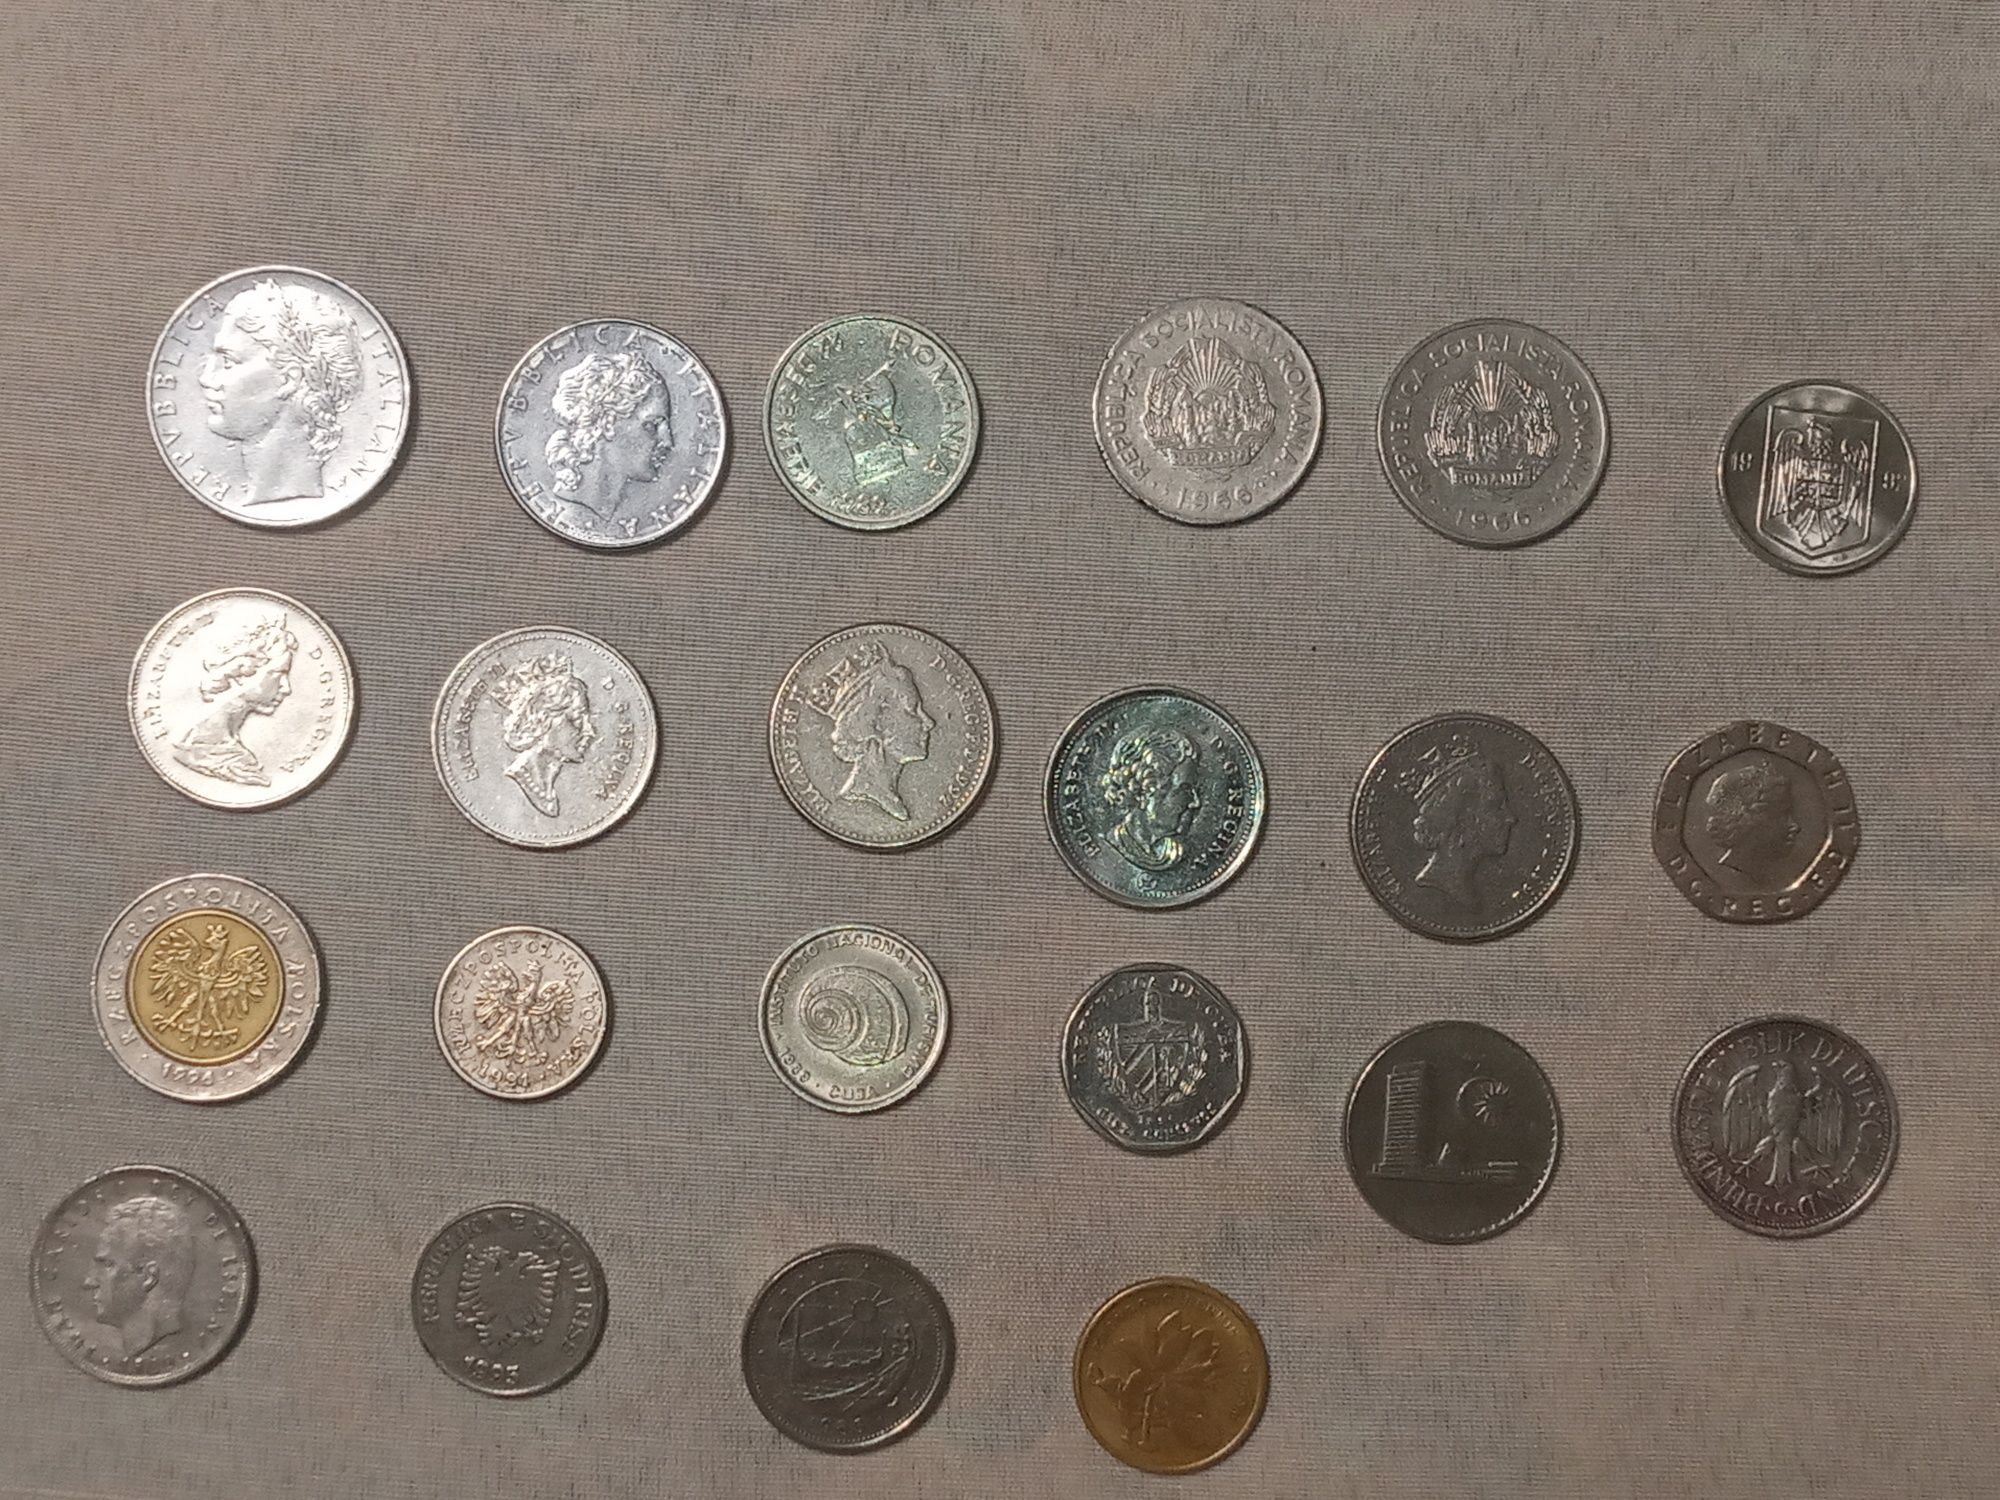 Монеты Италии, Румынии, Канады, Польши, Малайзии, Китай, Албании, Куба